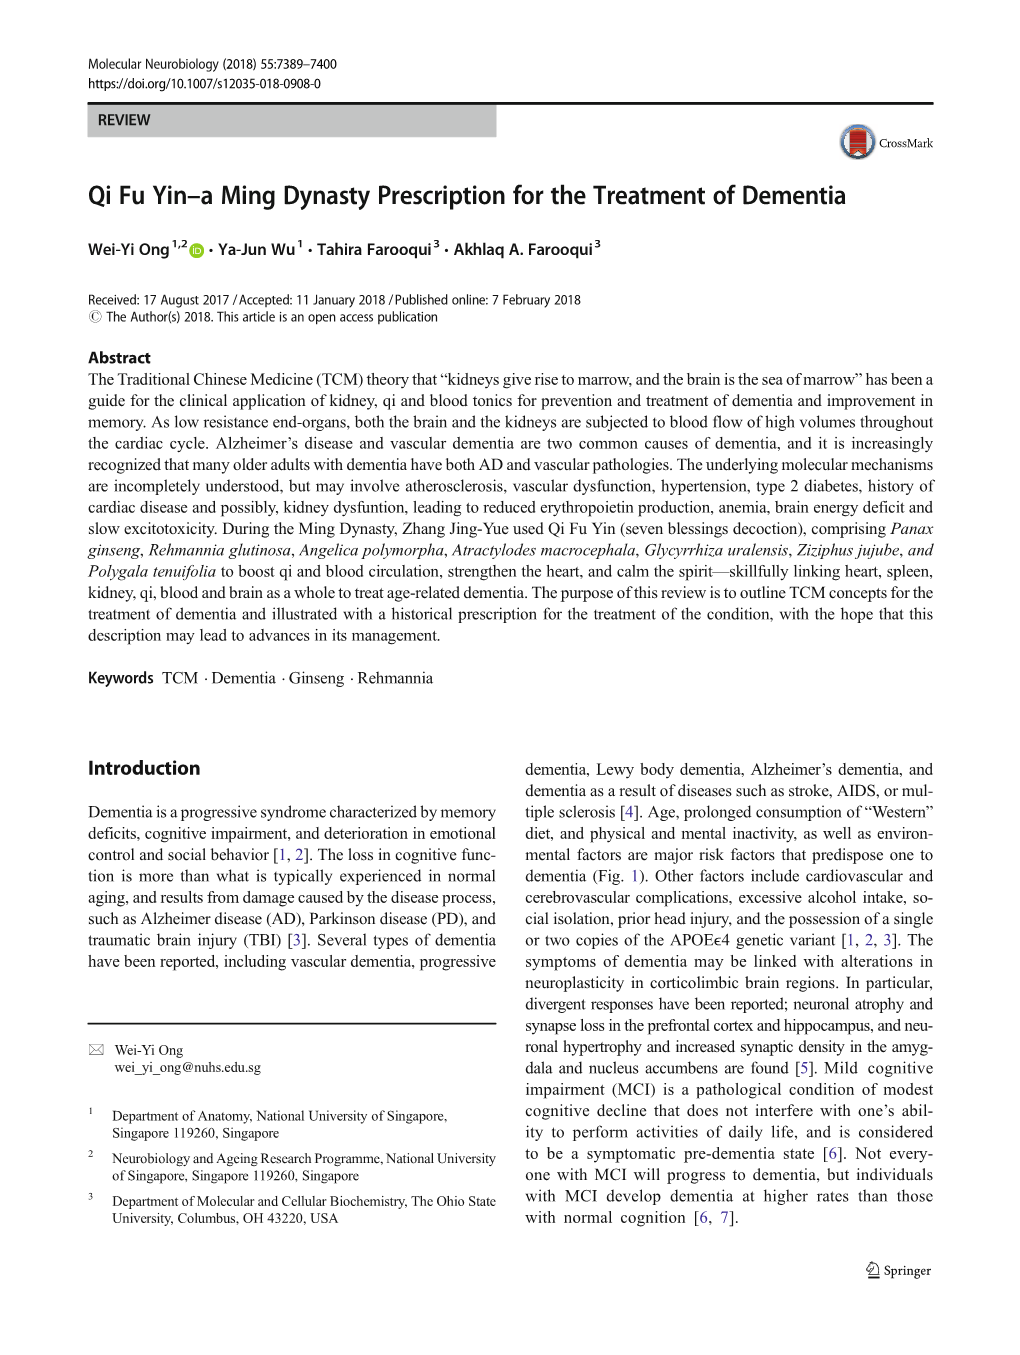 Qi Fu Yin–A Ming Dynasty Prescription for the Treatment of Dementia